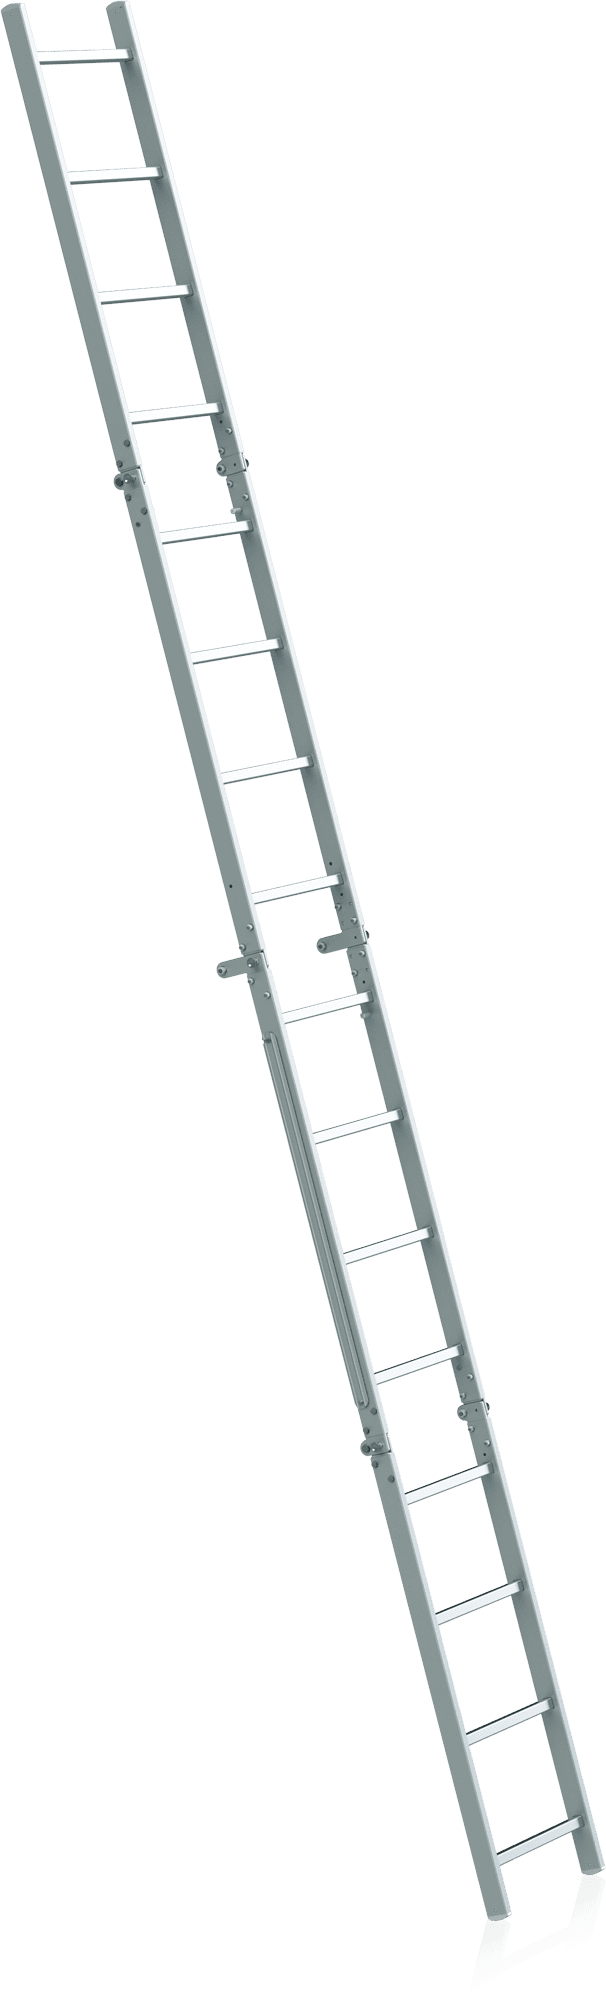 hasičský skladací rebrík klbový